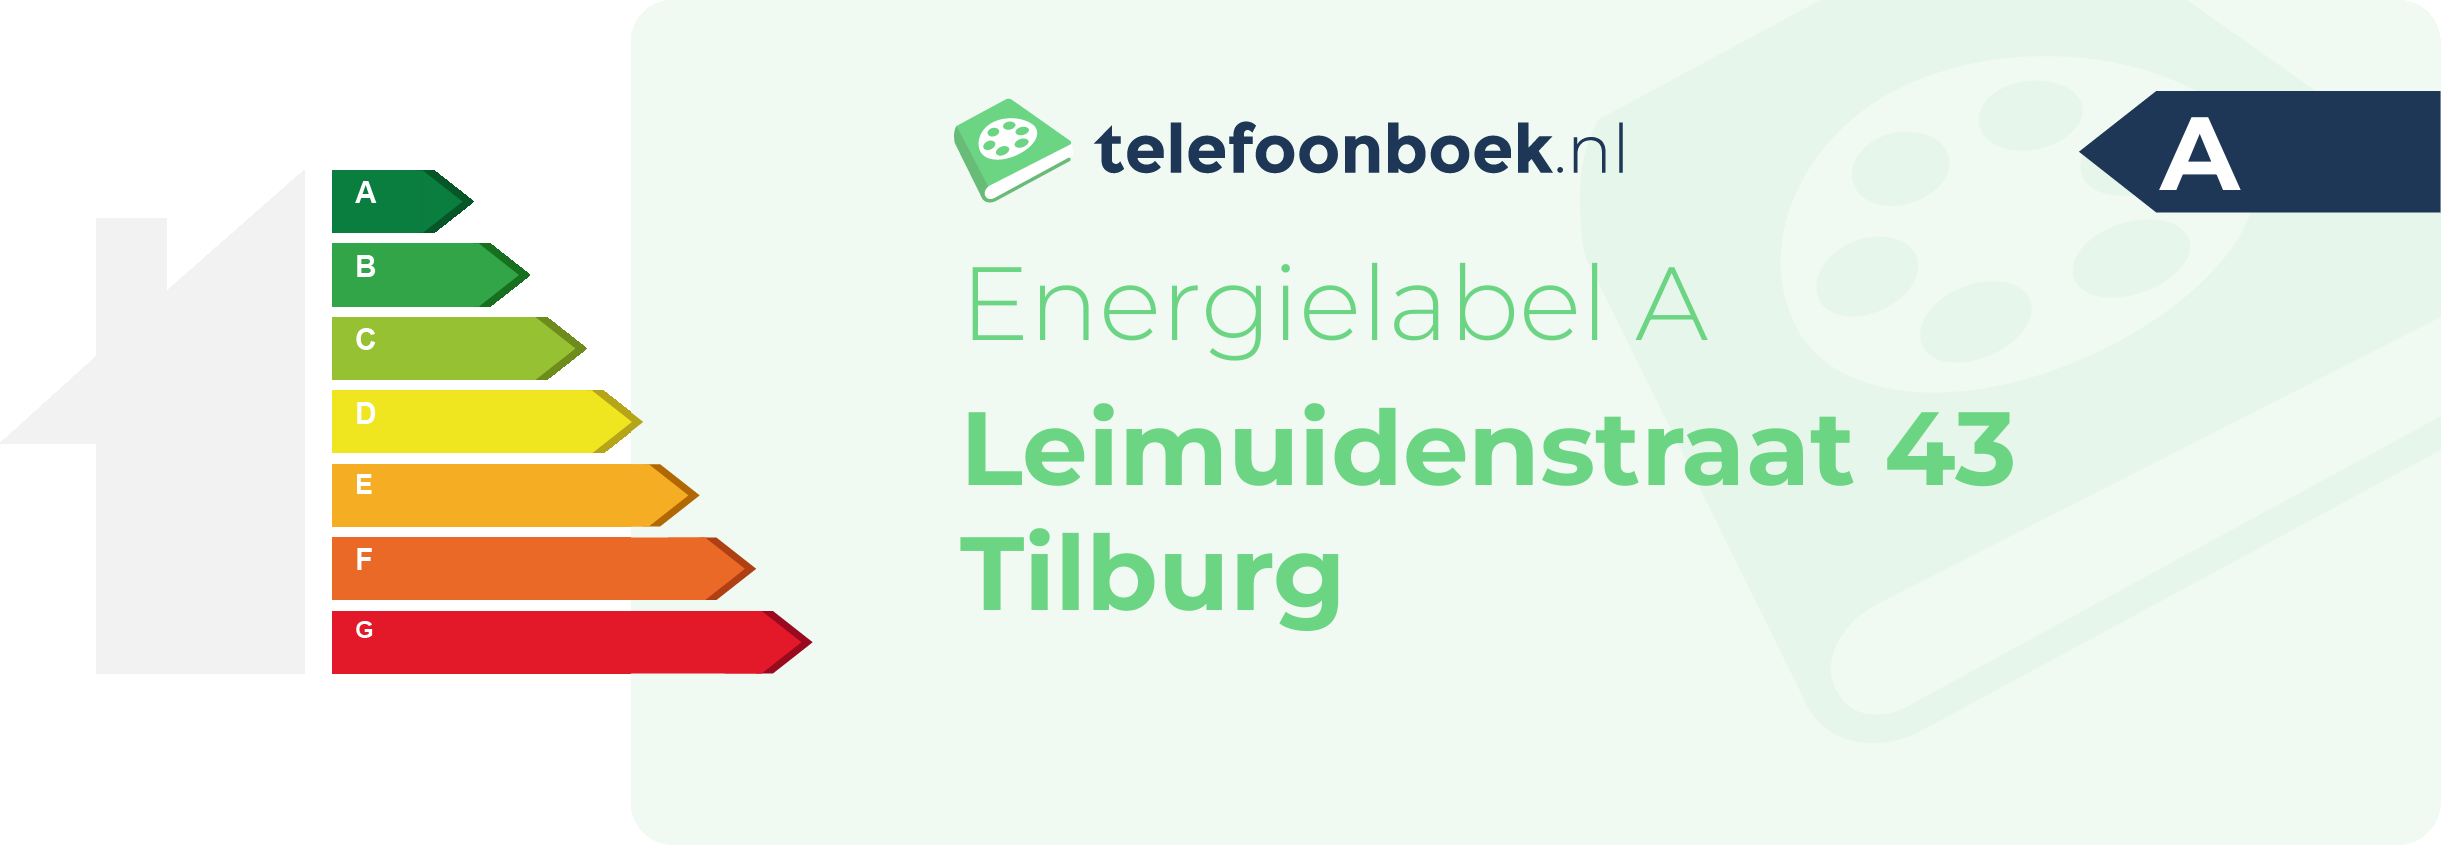 Energielabel Leimuidenstraat 43 Tilburg